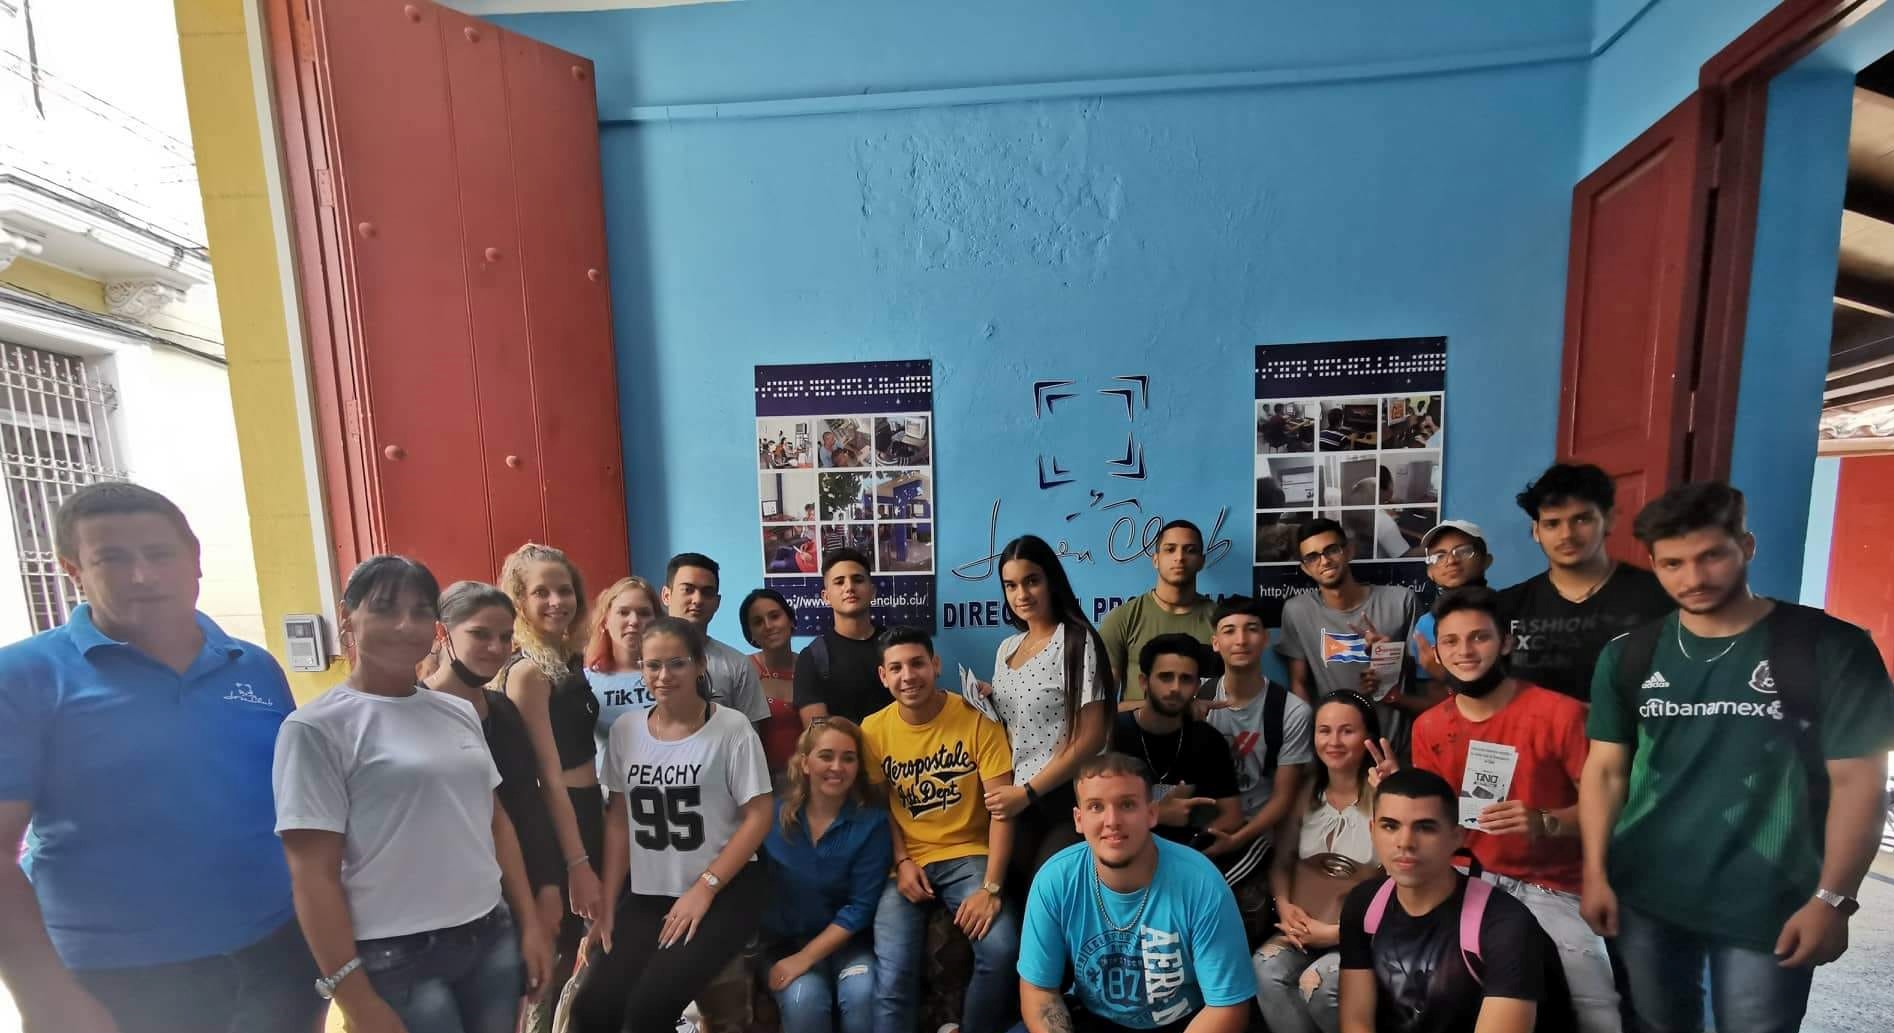  Estudiantes de Informática estrechan vínculos con los Joven Club en Sancti Spíritus